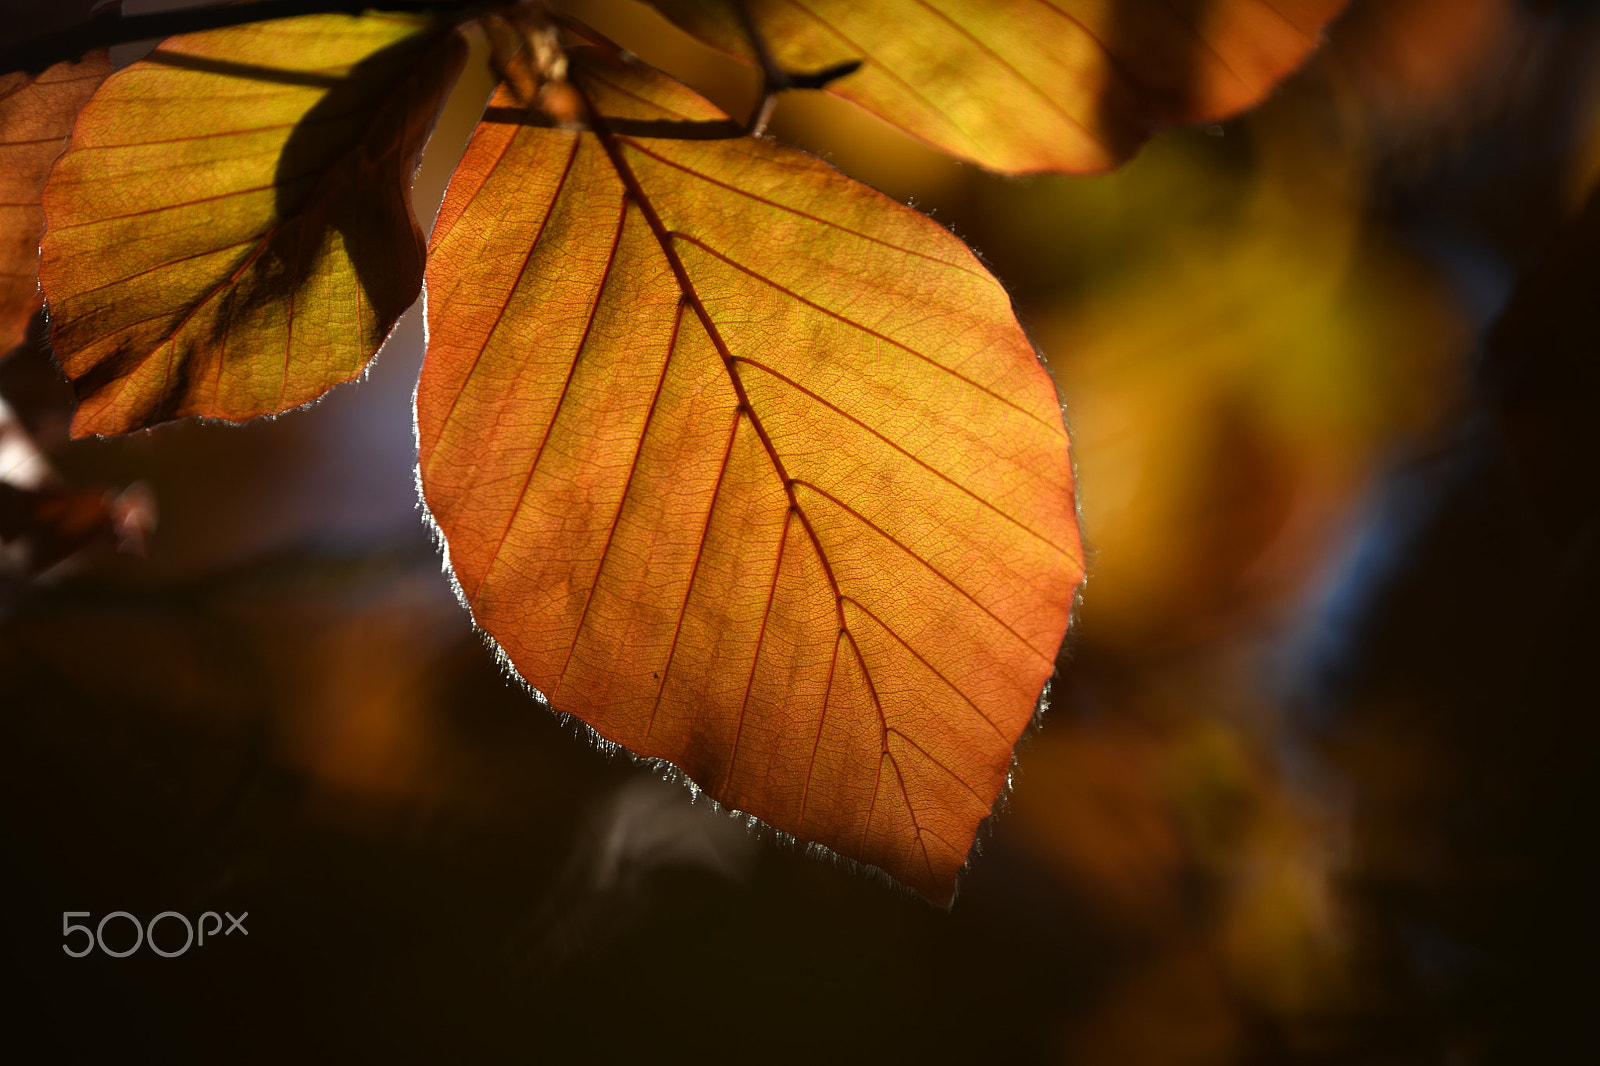 Nikon D850 sample photo. Golden spring leaf photography